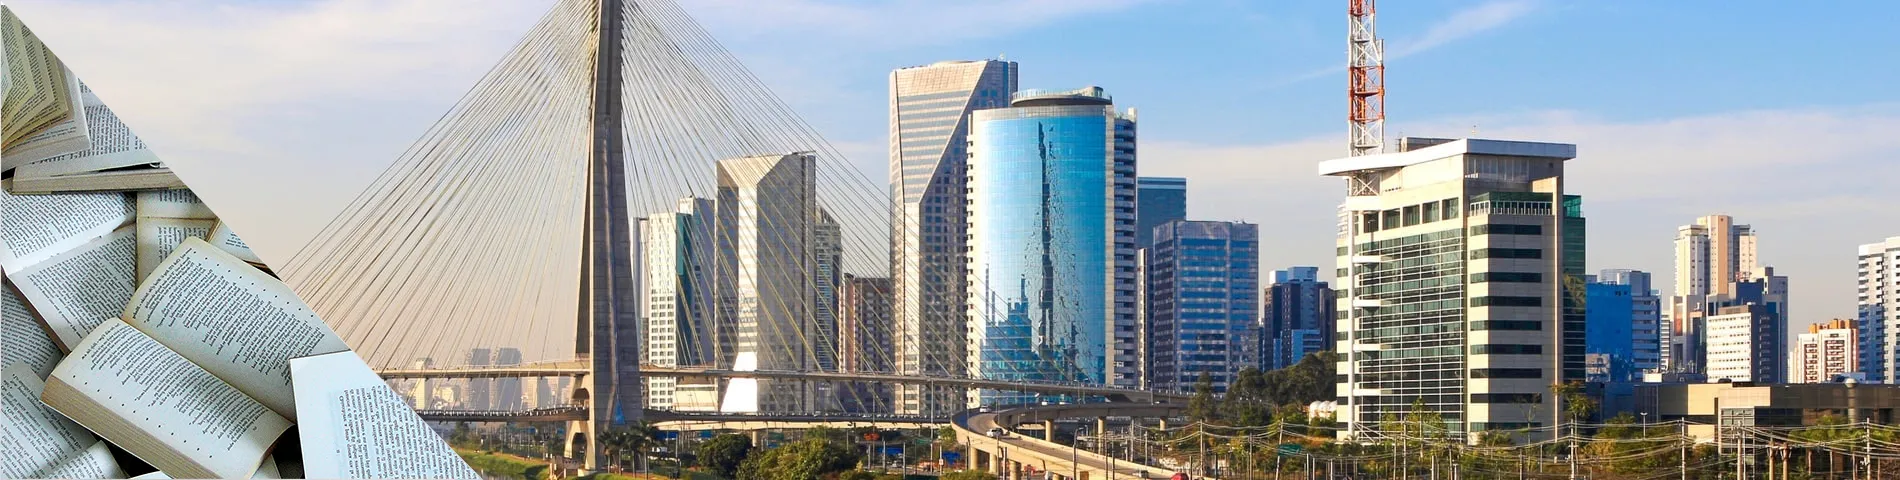 Sao Paulo - Super Intensivkurs (+35h)